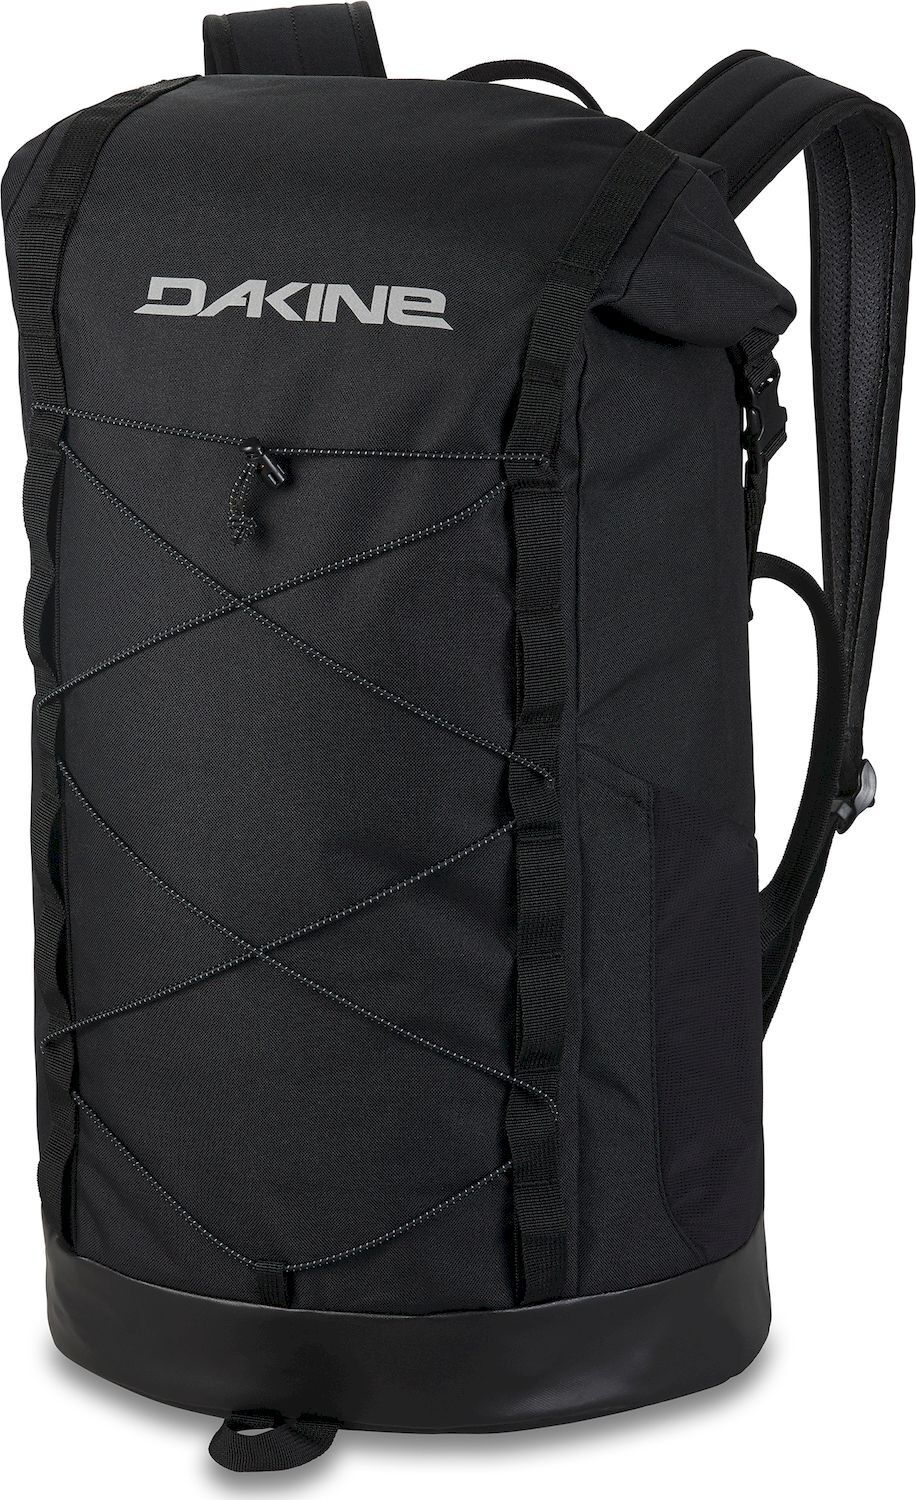 Dakine Mission Surf Roll Top Pack 35L - Backpack